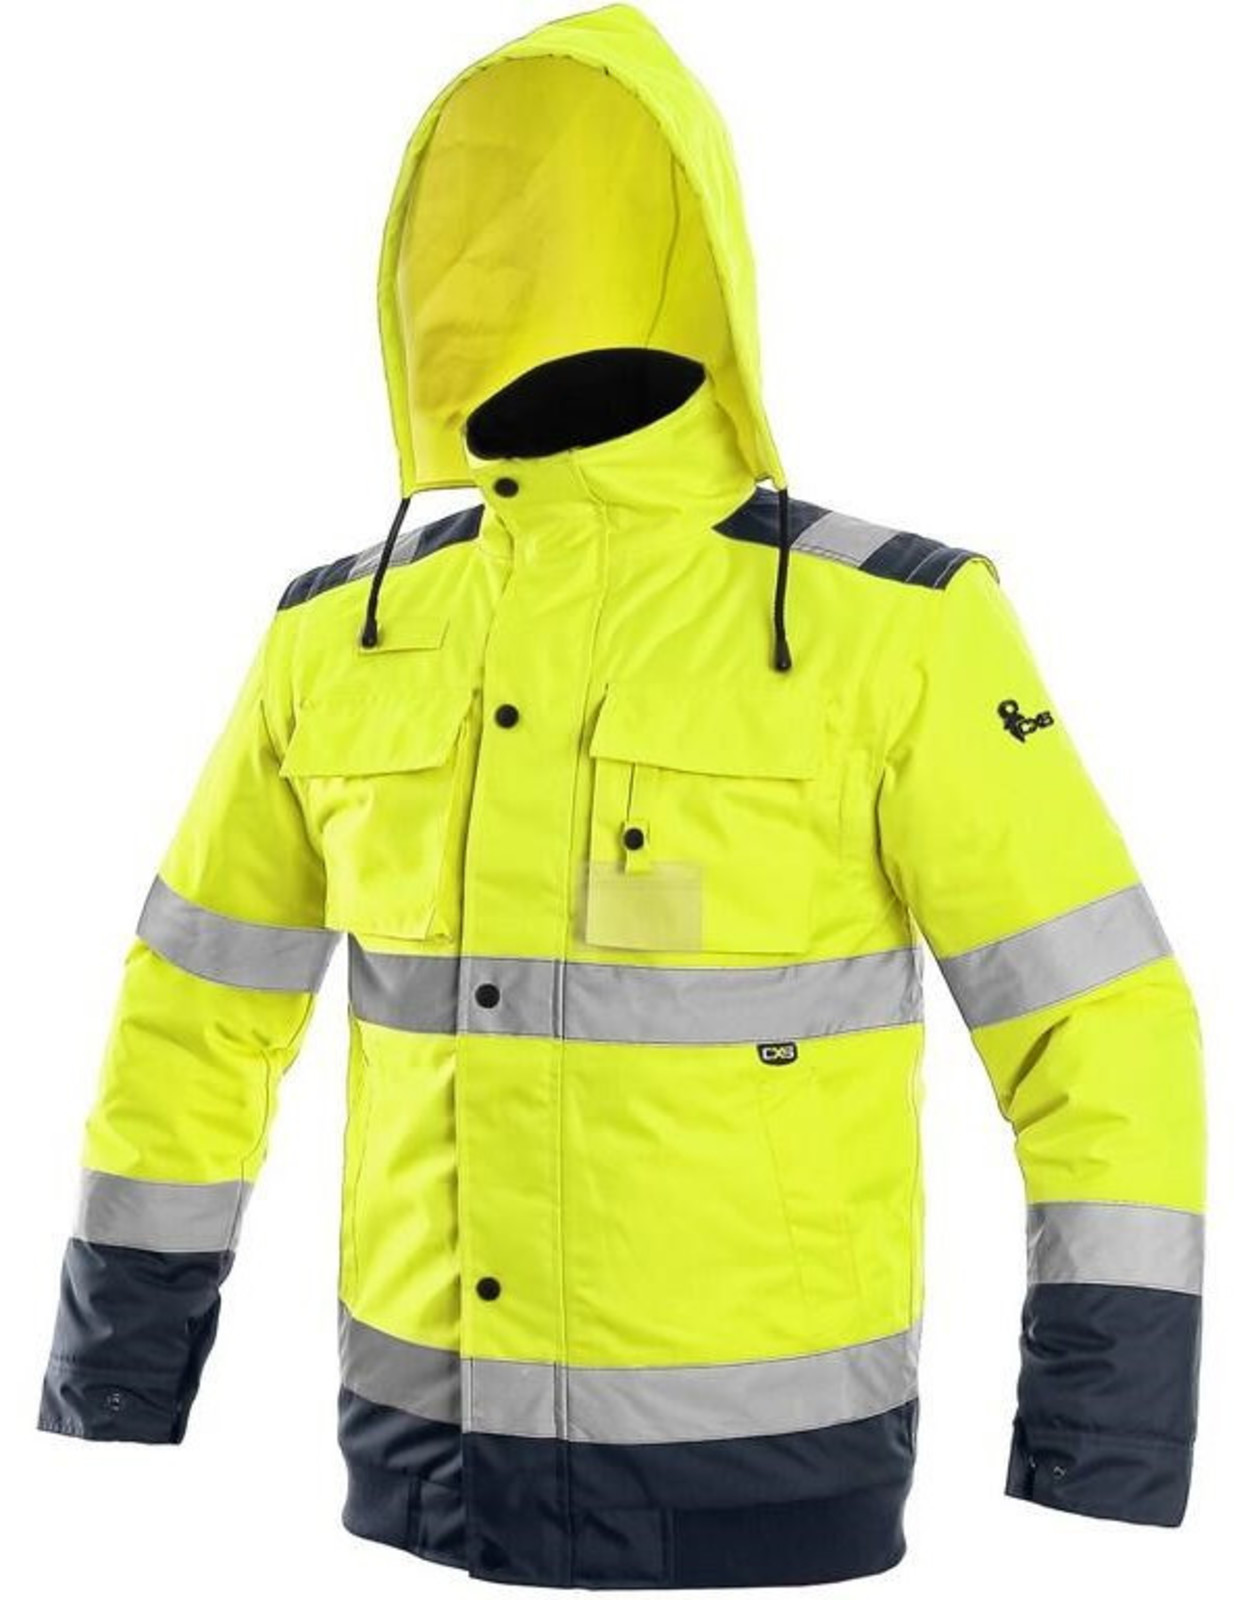 Zimná reflexná bunda CXS Luton 2v1 - veľkosť: 5XL, farba: žltá/navy